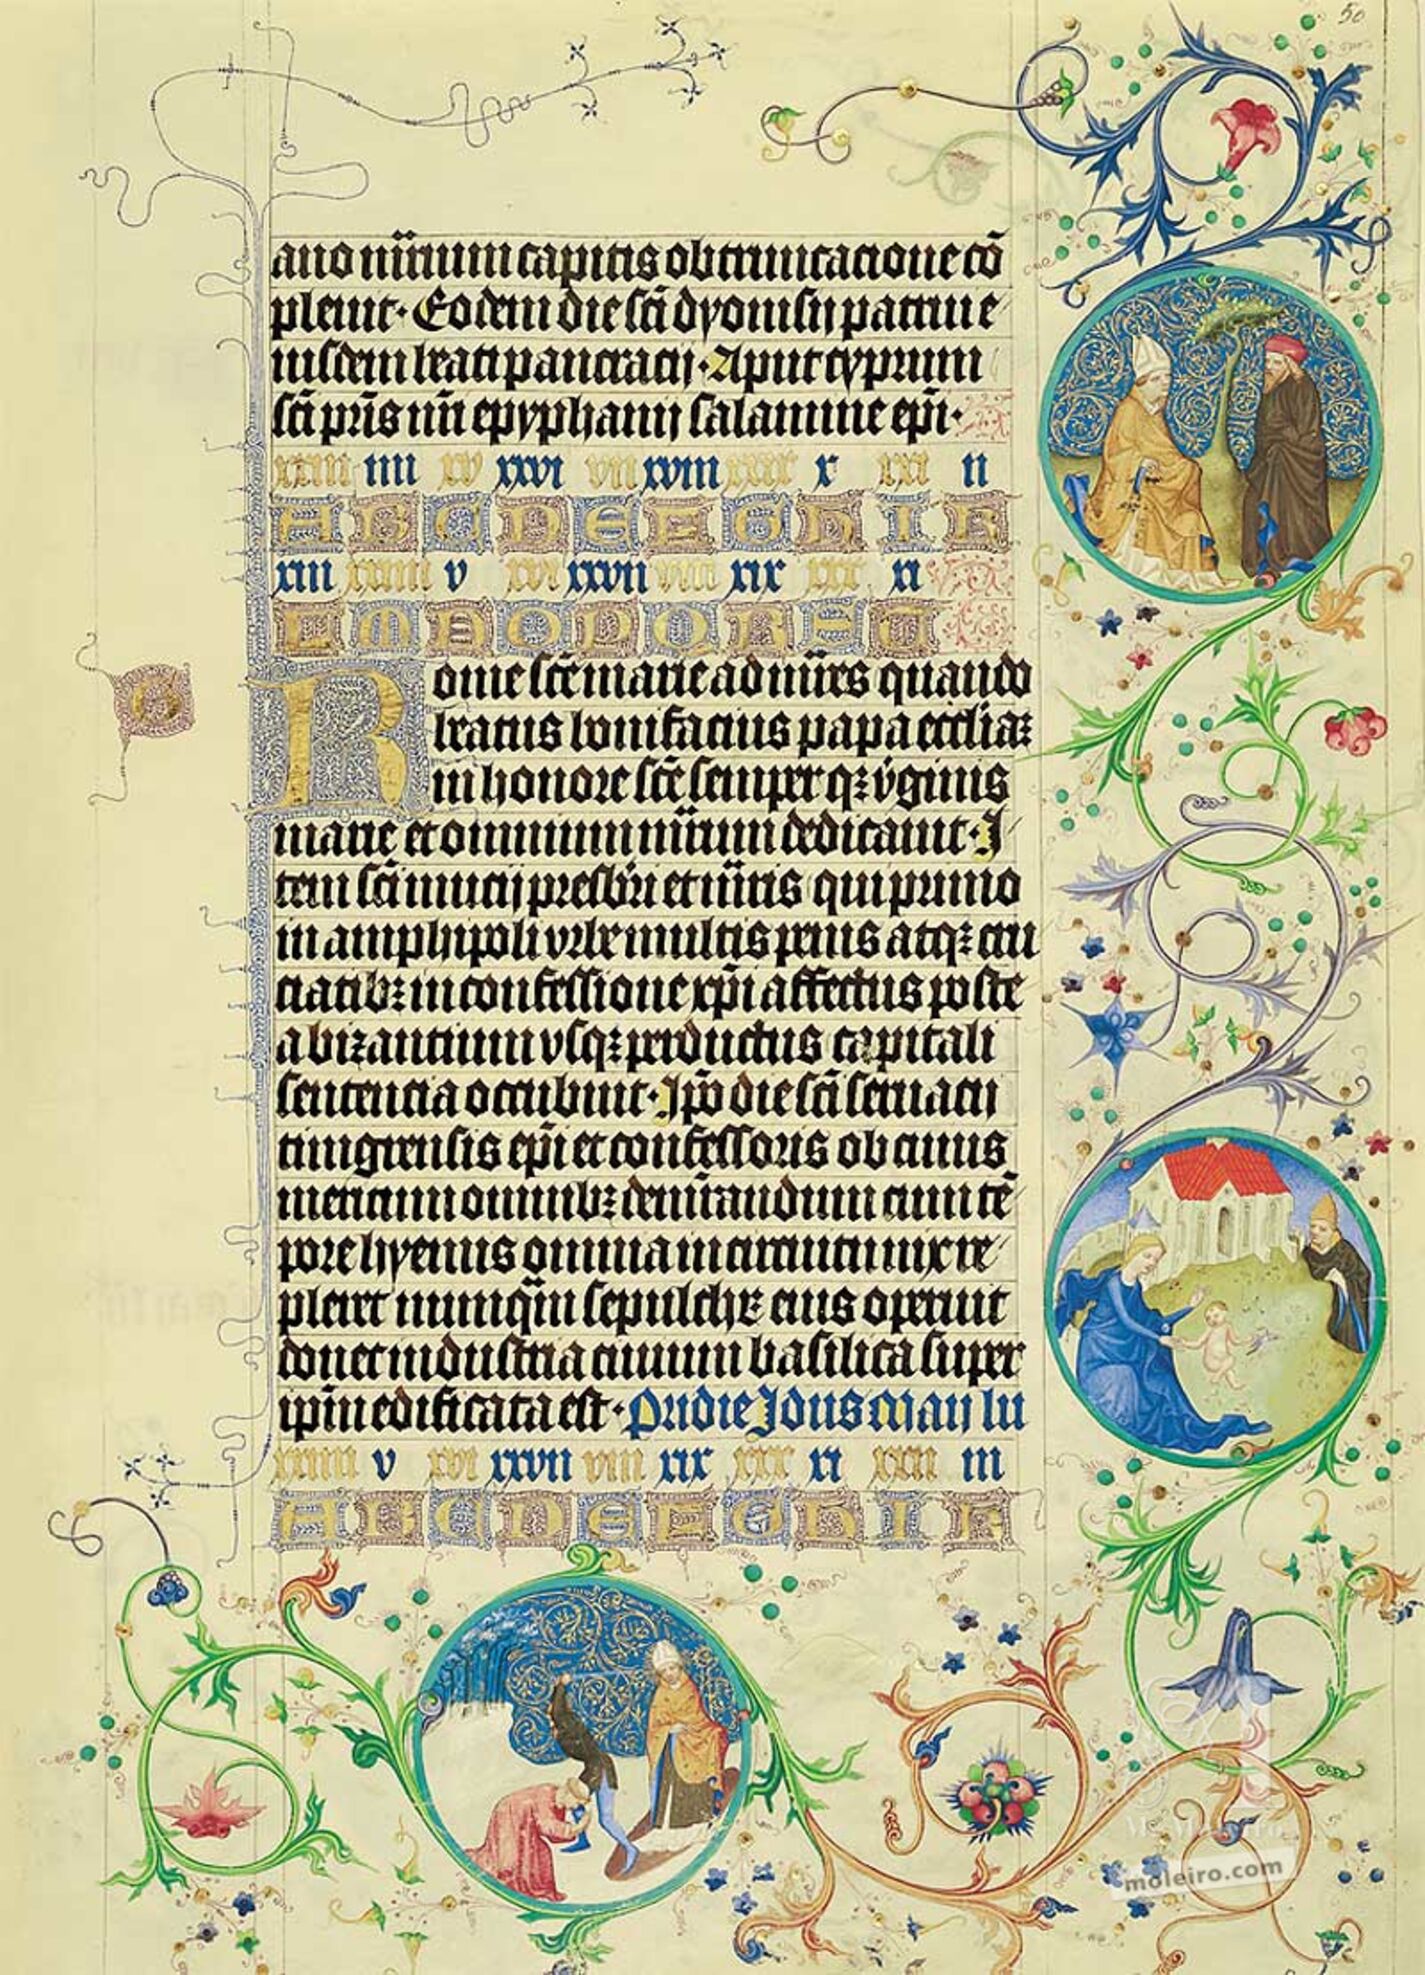 Lámina del Martirologio de Usuardo, 13 de Mayo (folio 50r)